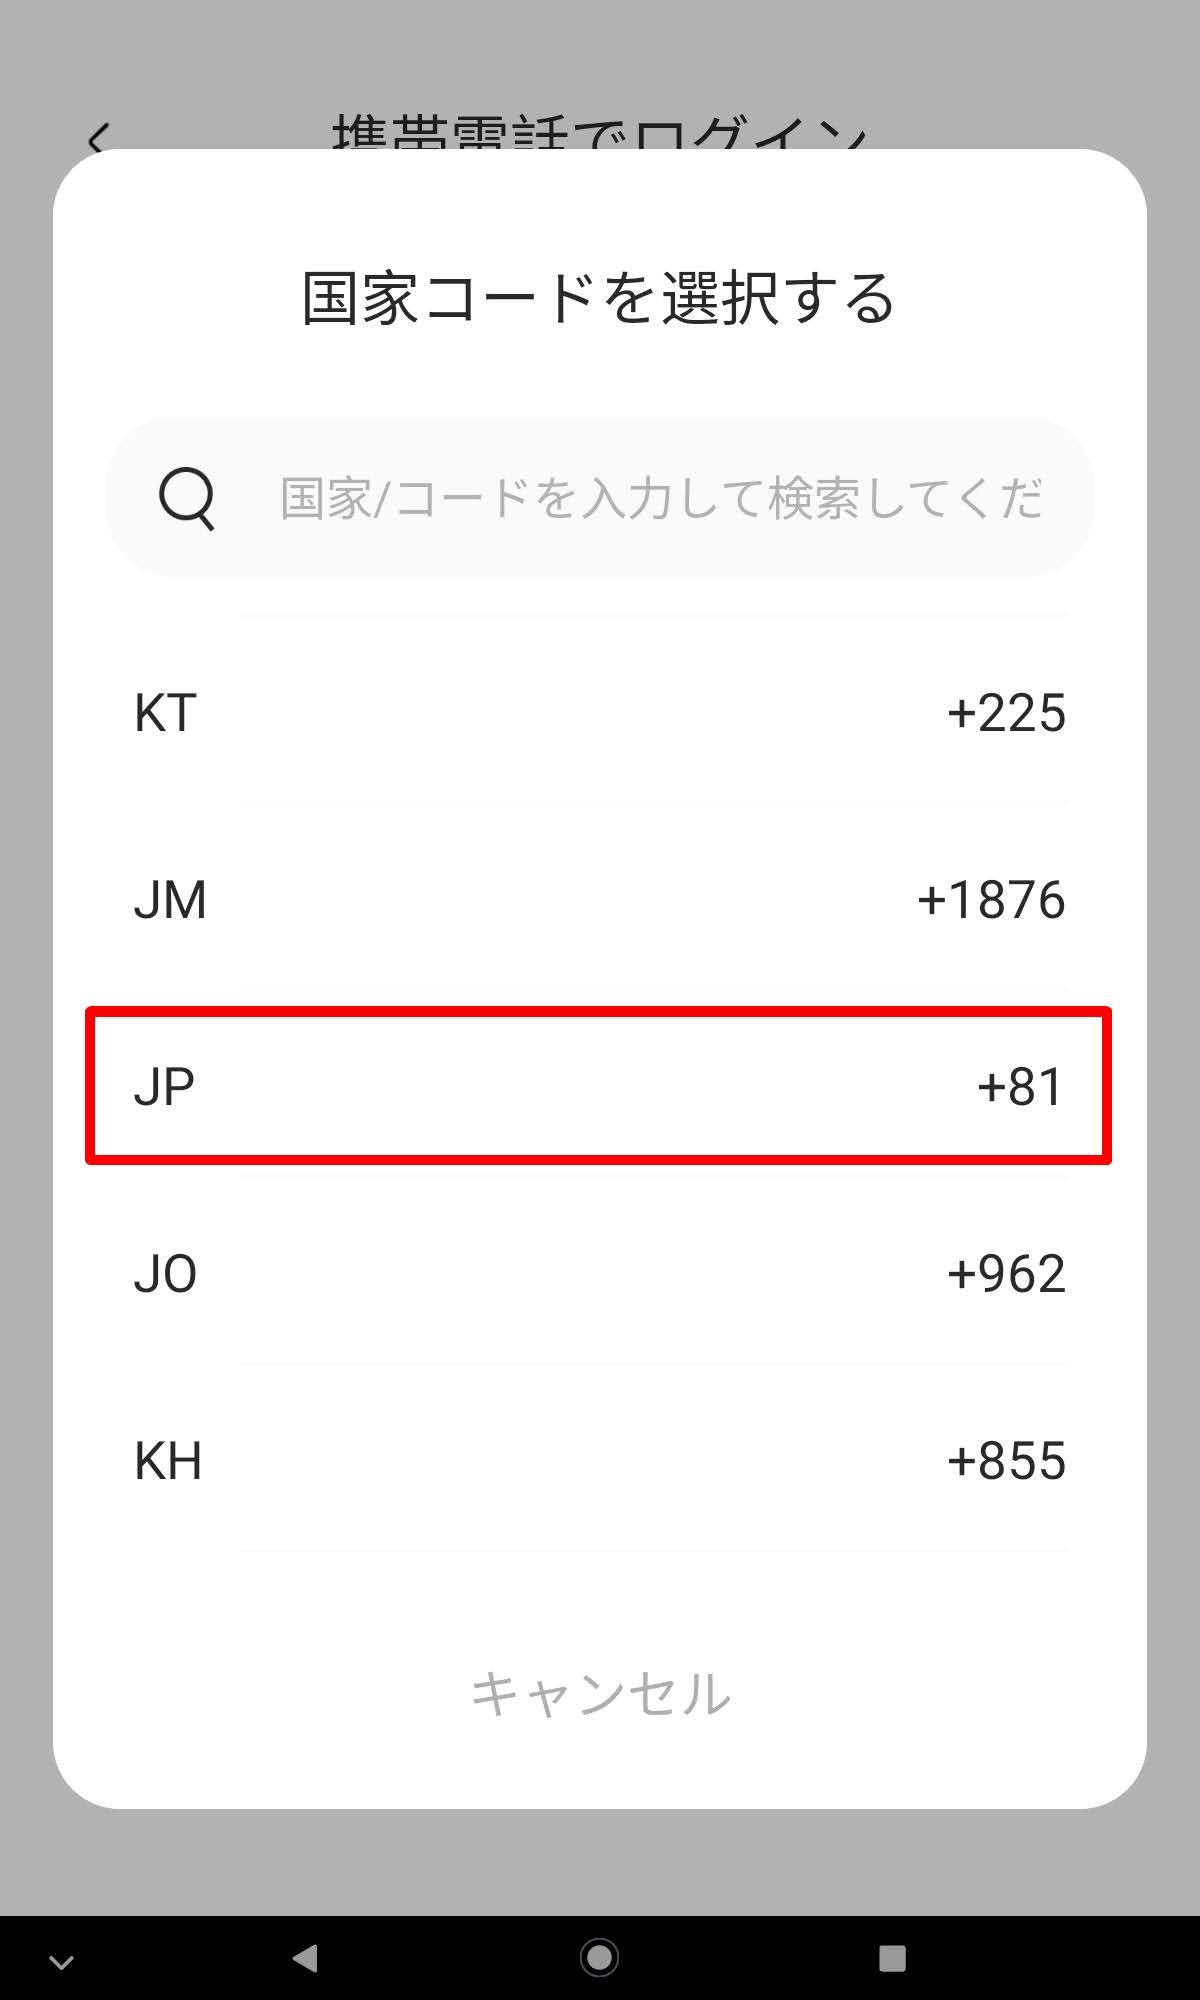 Oladance OWS Pro：日本である「JP」の＋81を選択